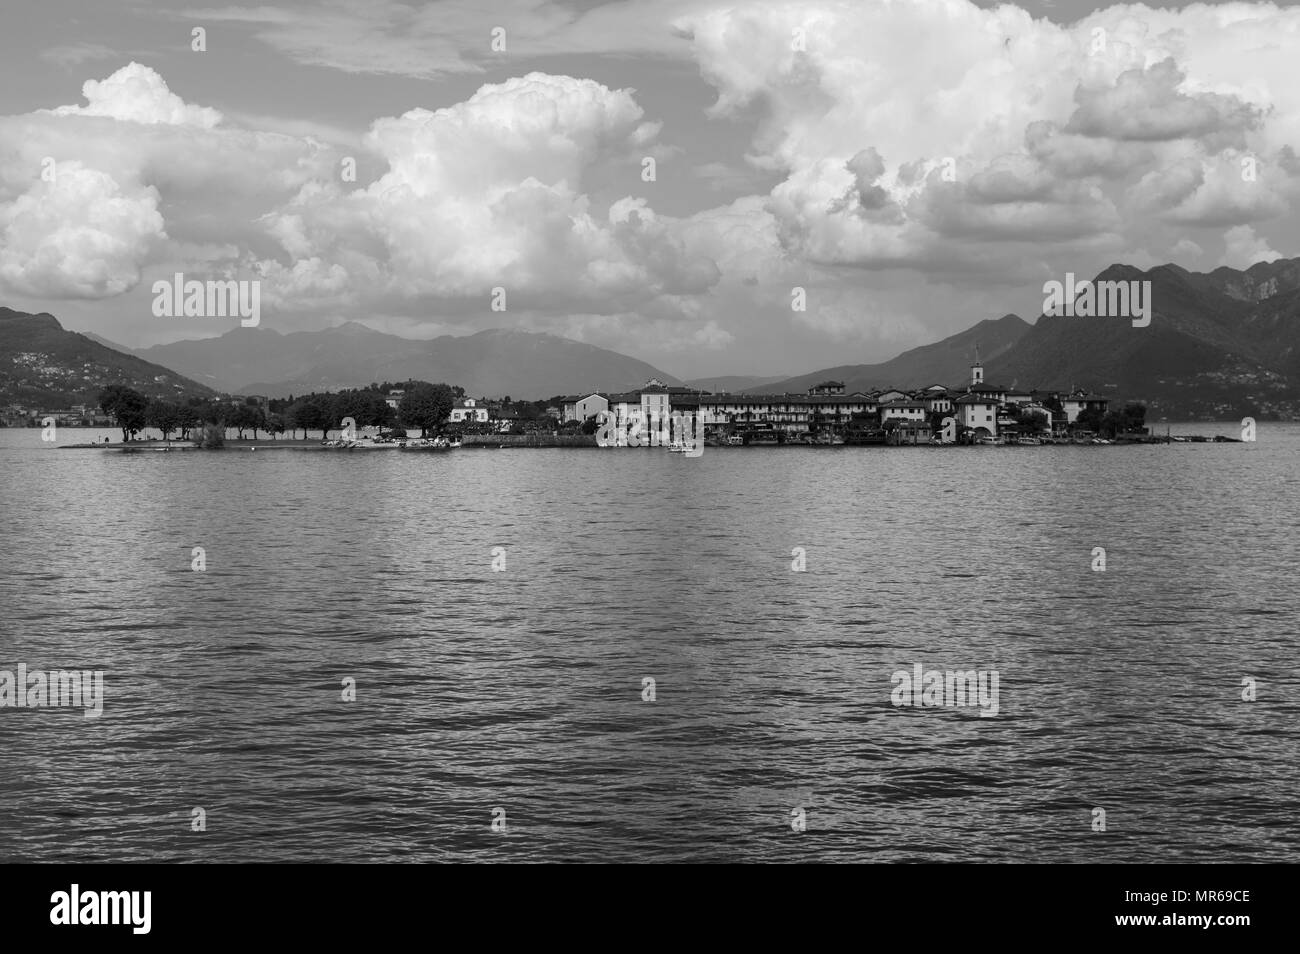 Isola Pescatori, Isole Borromee, Stresa, Verbano-Cusio-Ossola, Piemonte, Italia. Isola Pescatori: island of Lake Maggiore, Piedmont, Italy Stock Photo